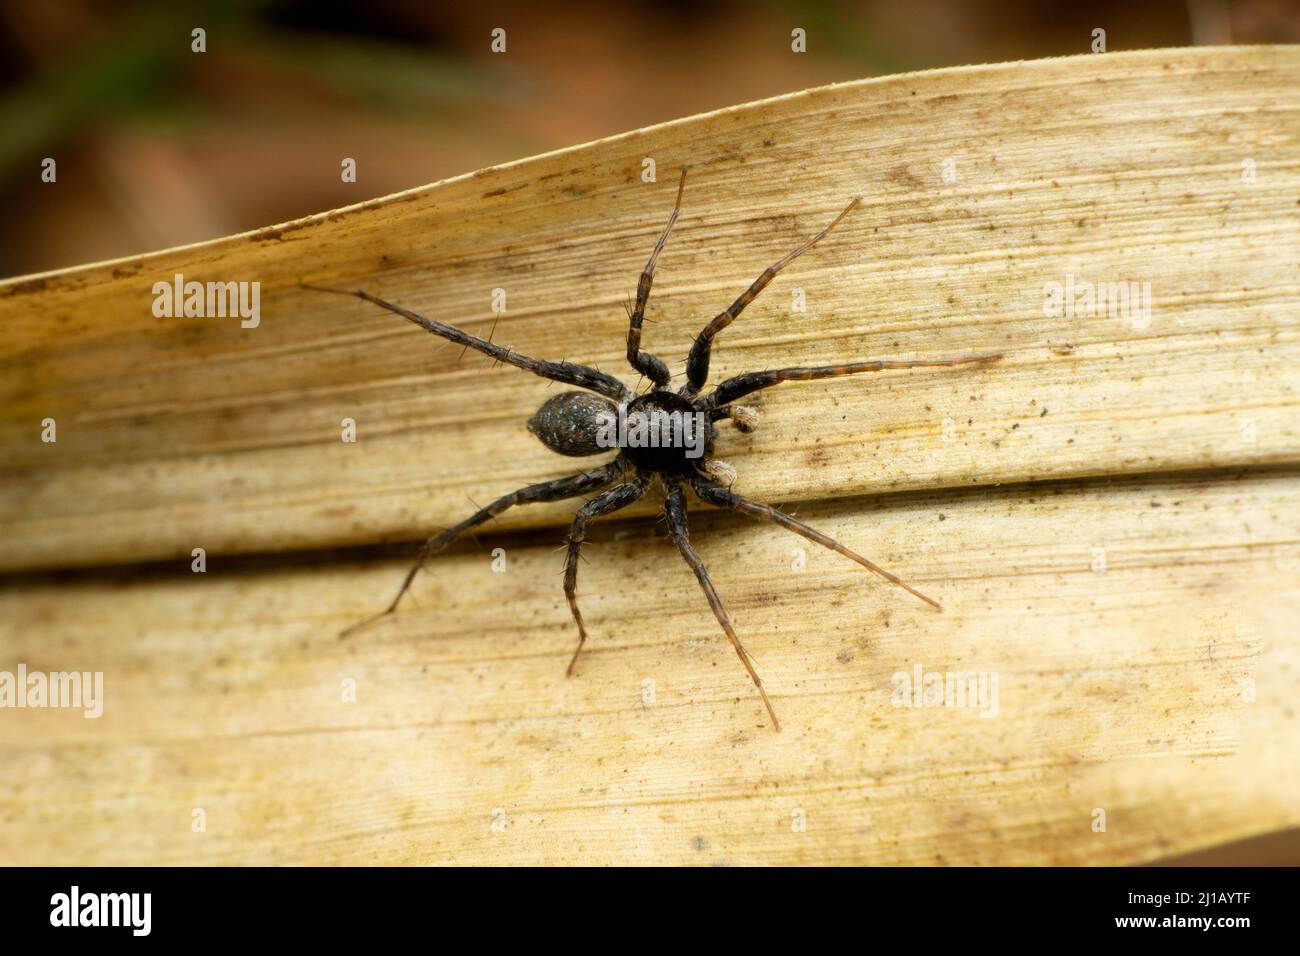 Black wolf spider , lycosa species, Satara, Maharashtra, India Stock Photo